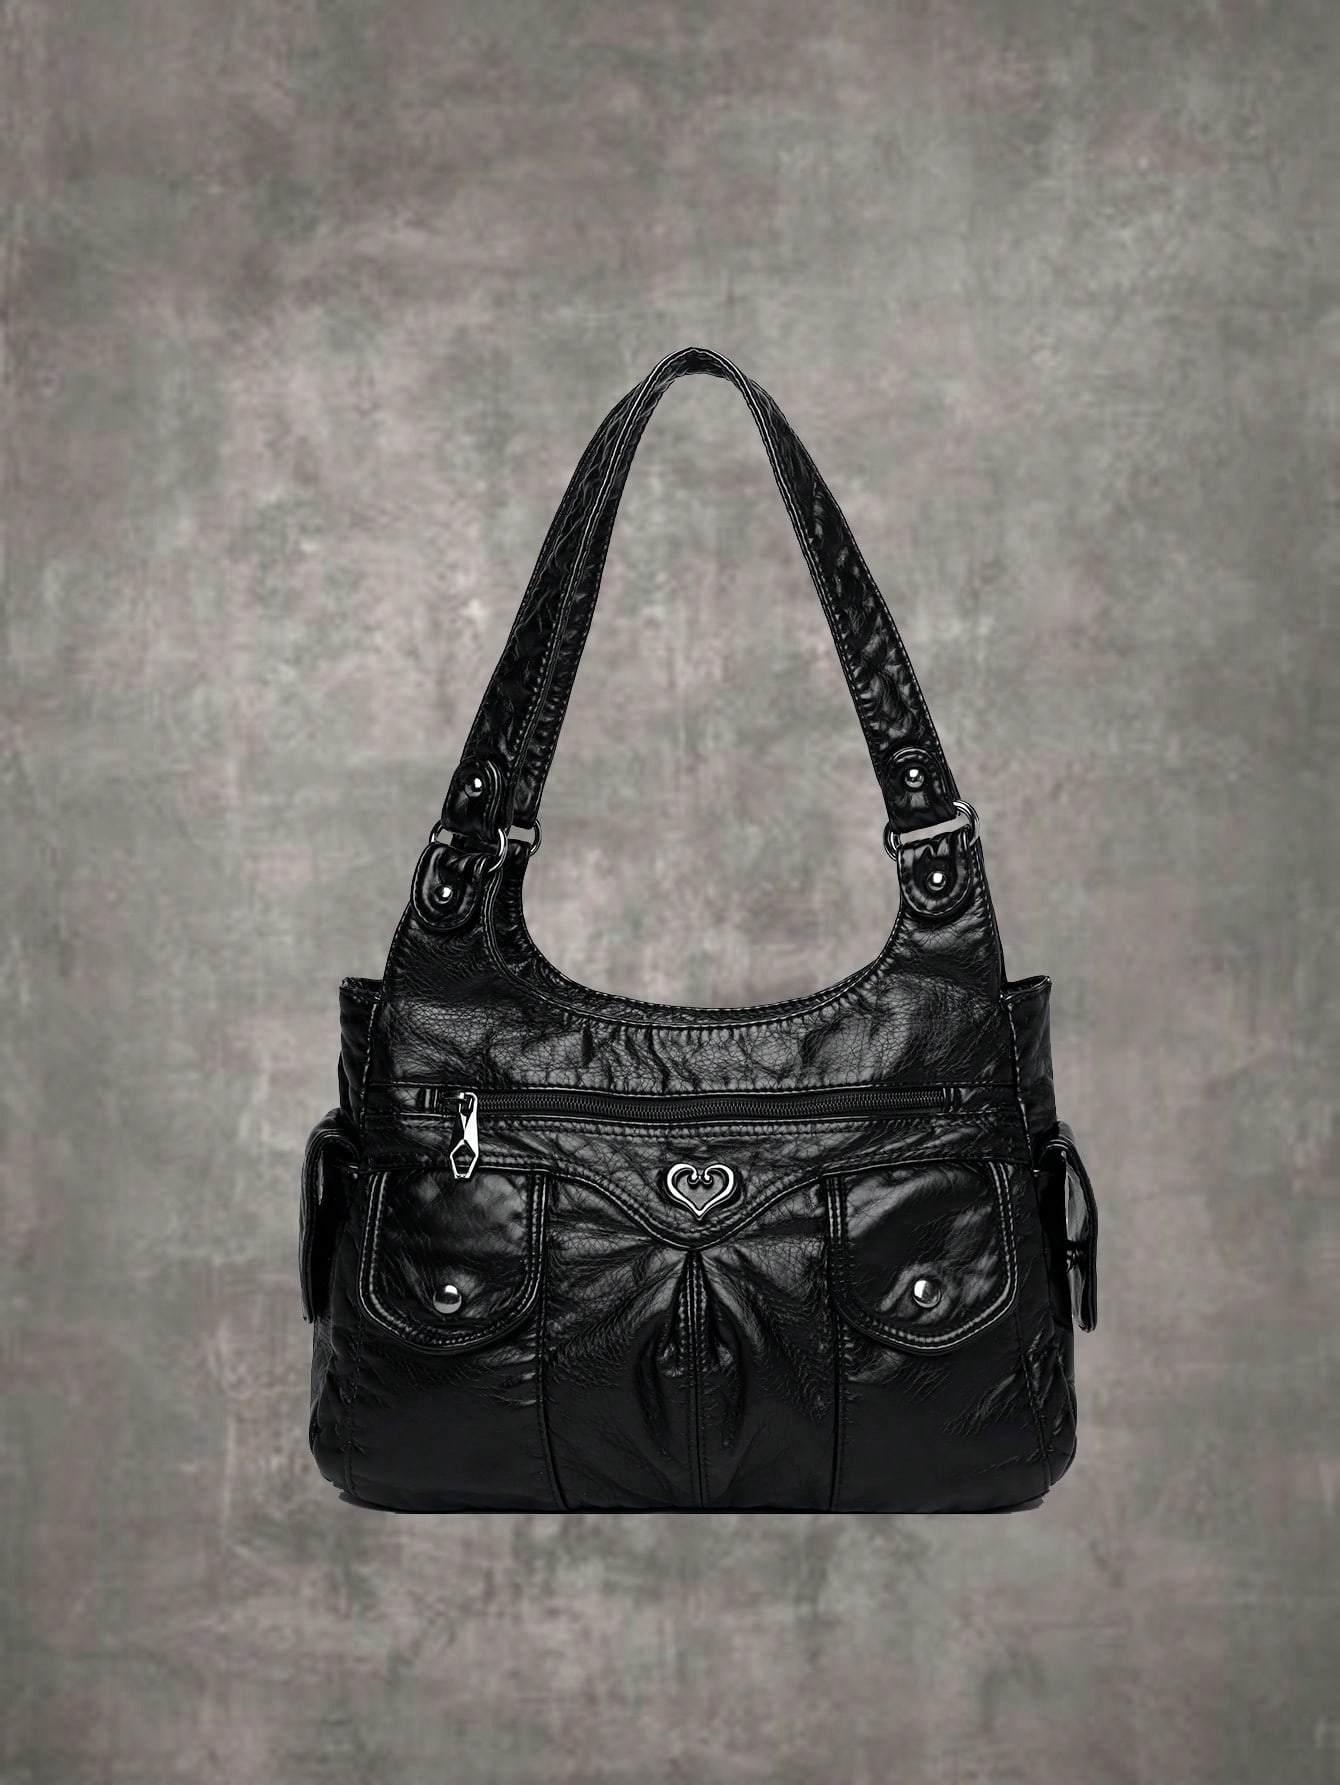 ROMWE Повседневная женская сумка на плечо в стиле гранж-панк/тоут большая вместительная сумка для поездок на работу, черный сумка тоут повседневная серый